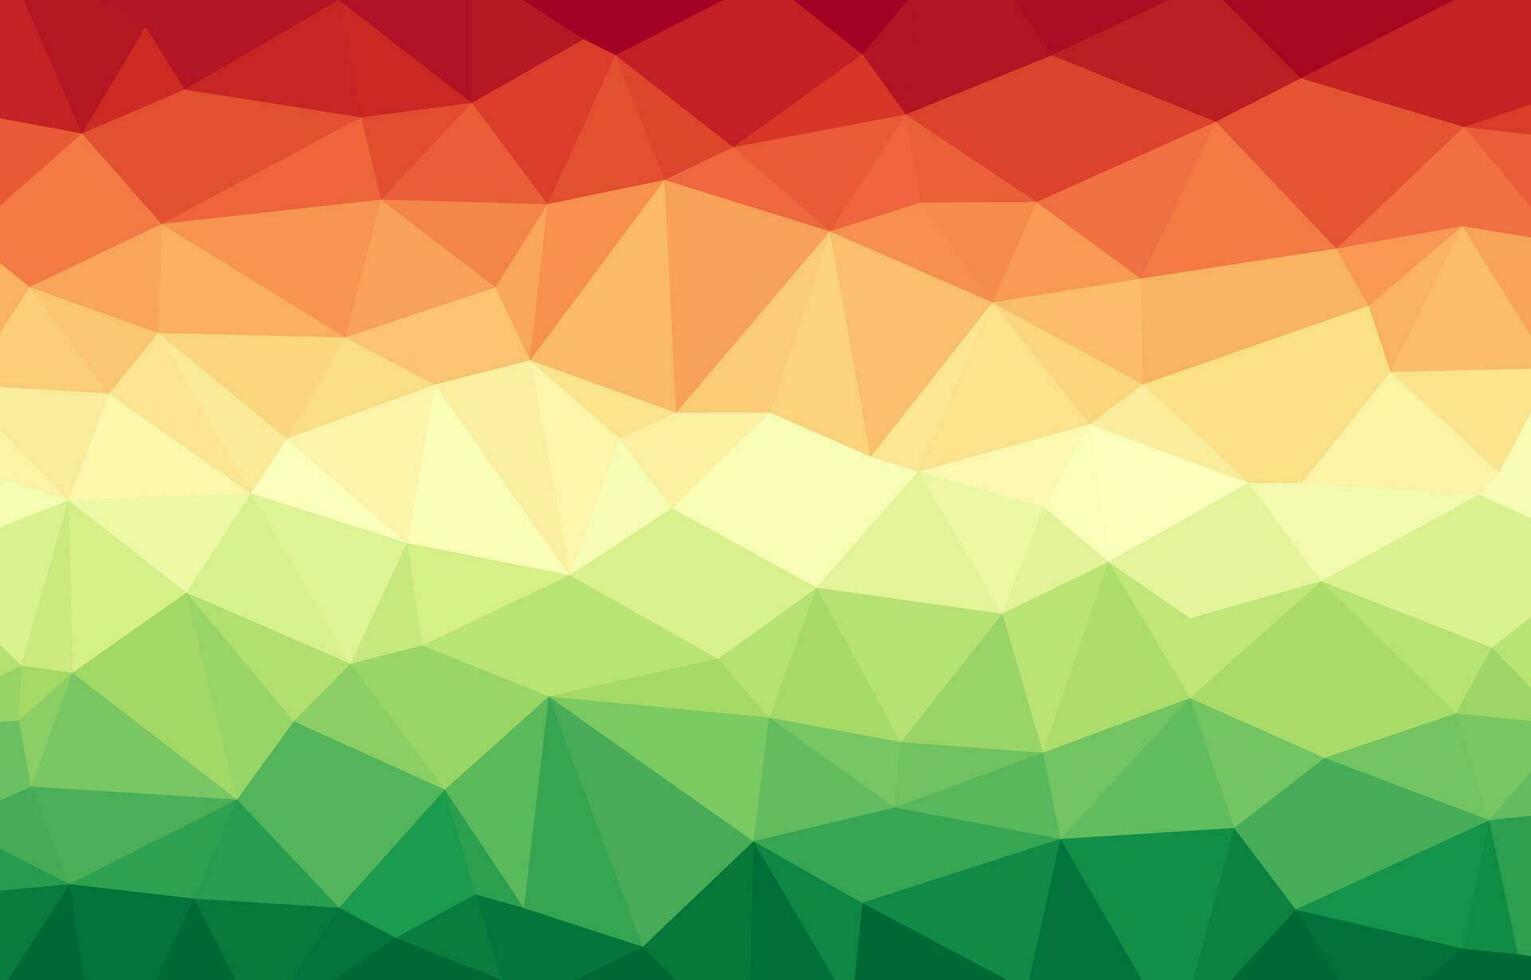 abstrakt bakgrund med trianglar, grön, orange och röd färger vektor